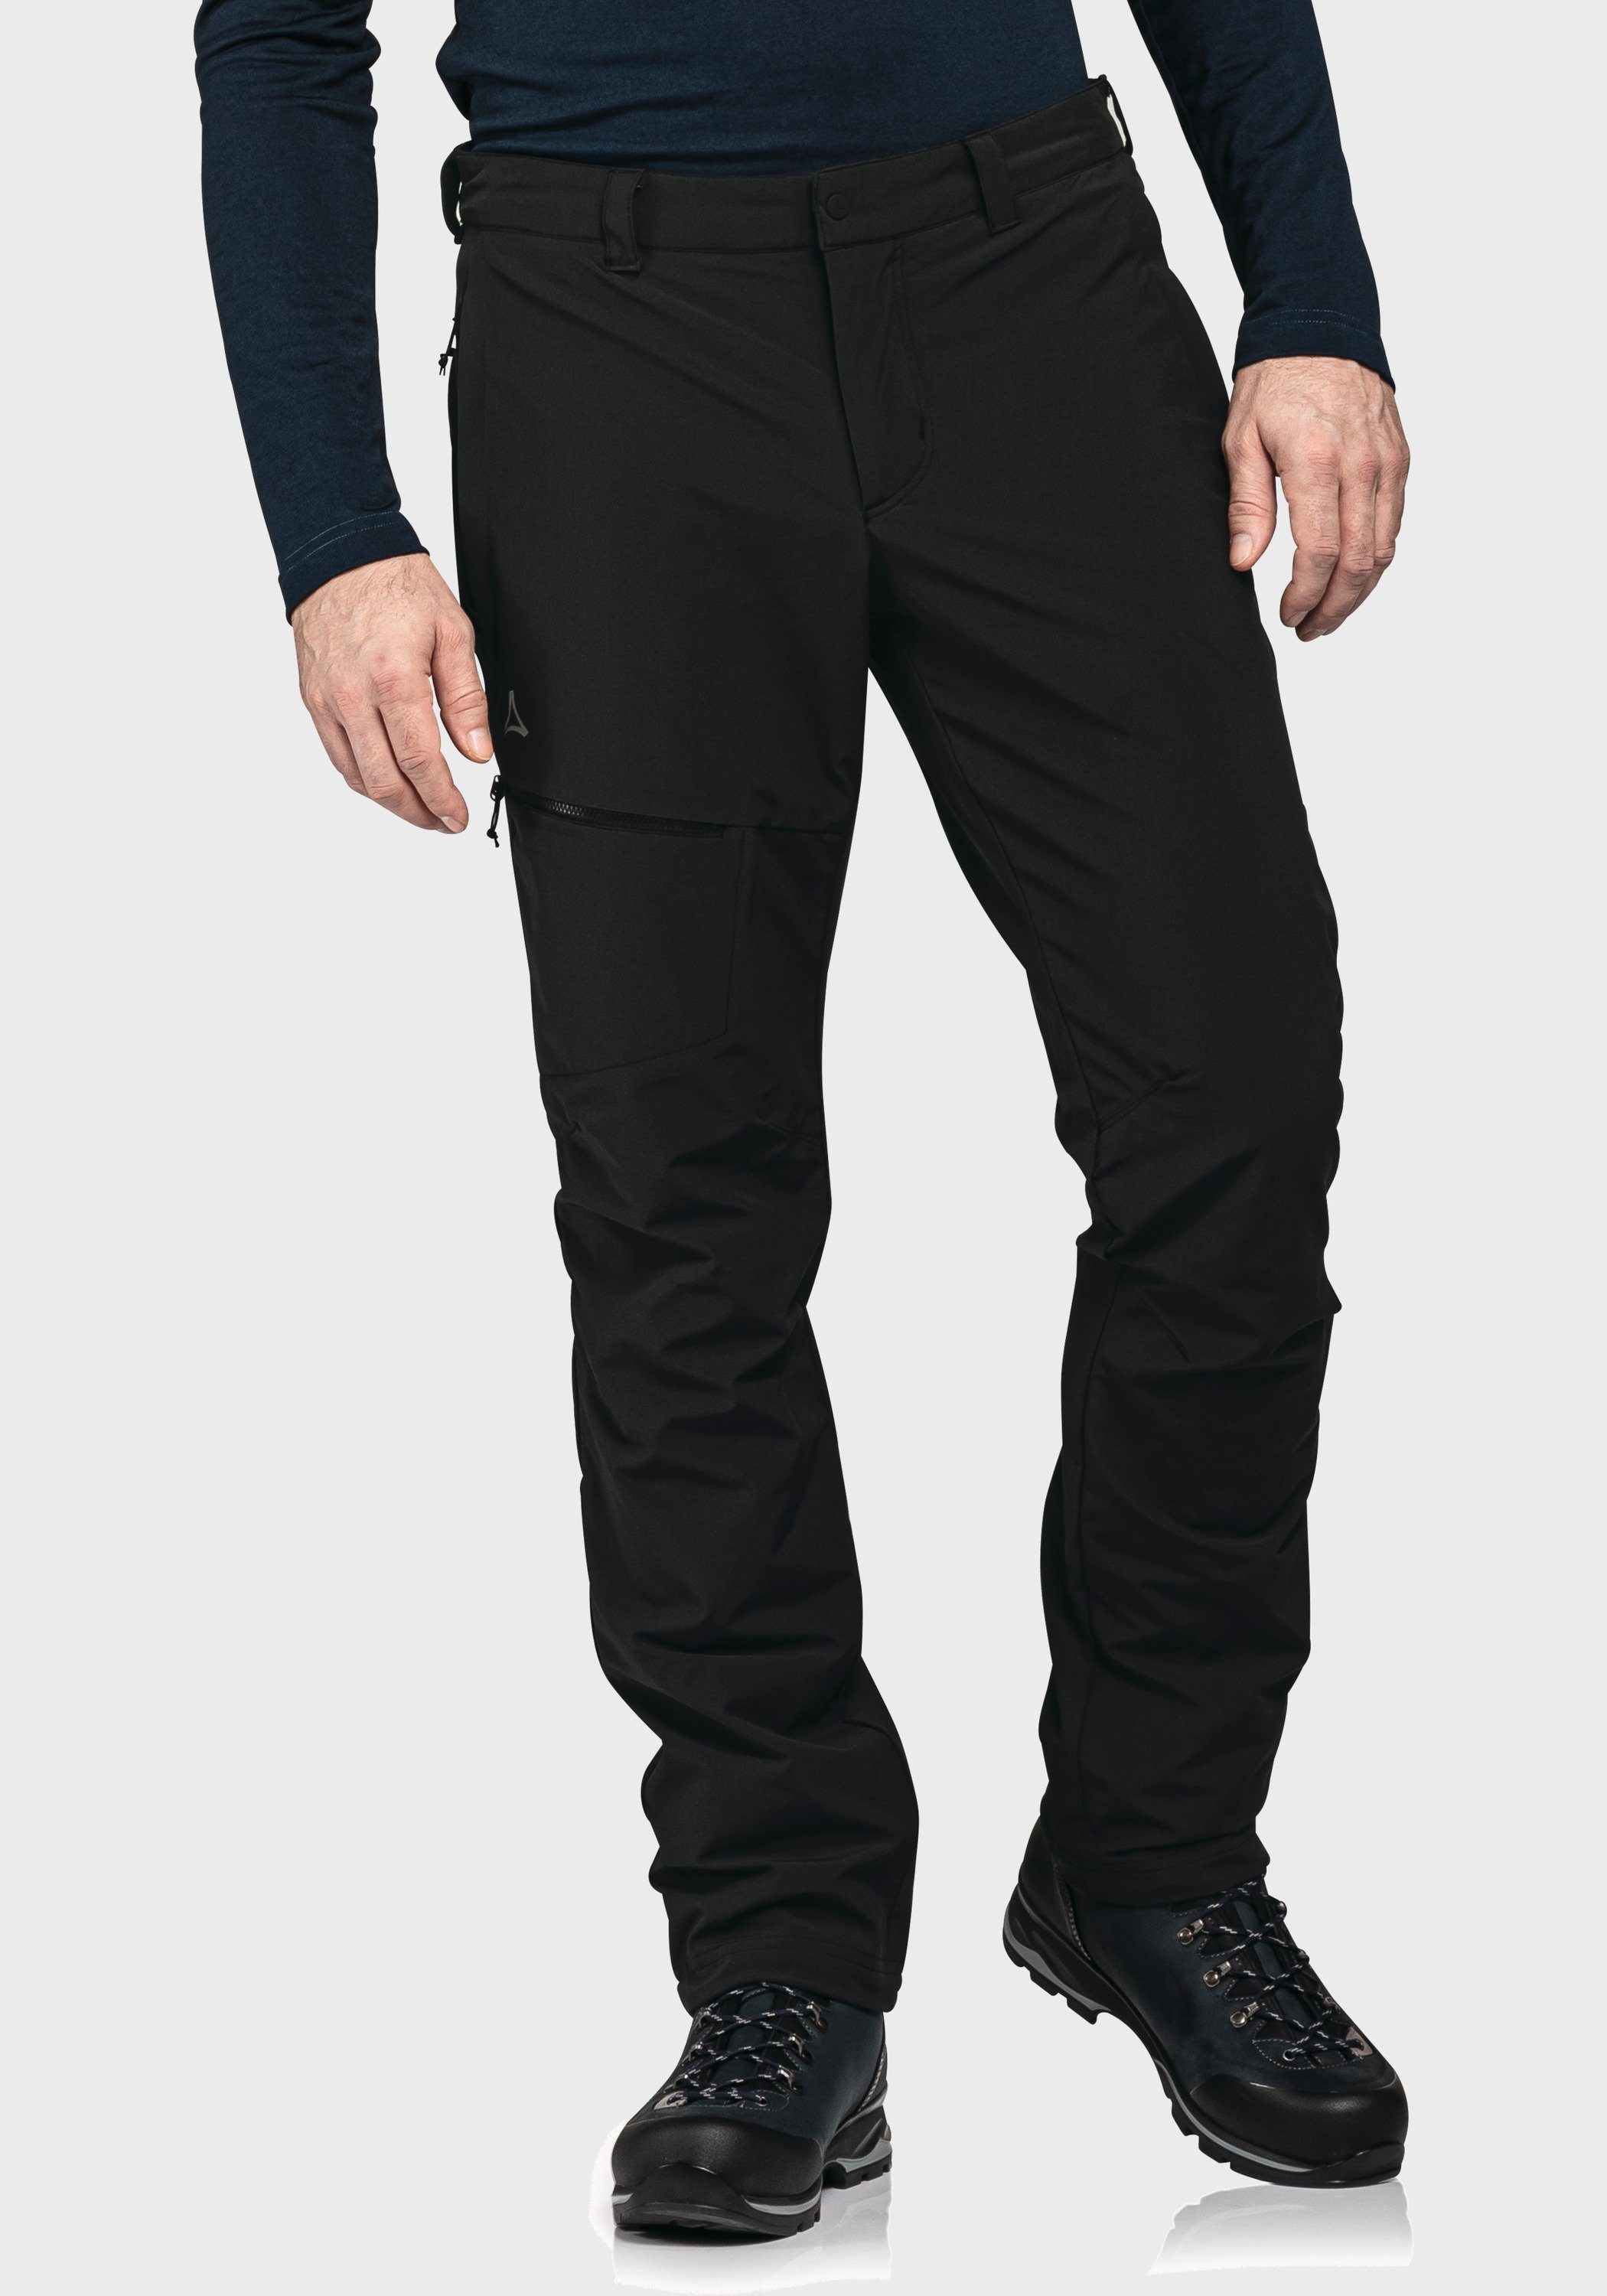 Koper1 schwarz Outdoorhose Warm Schöffel Pants M